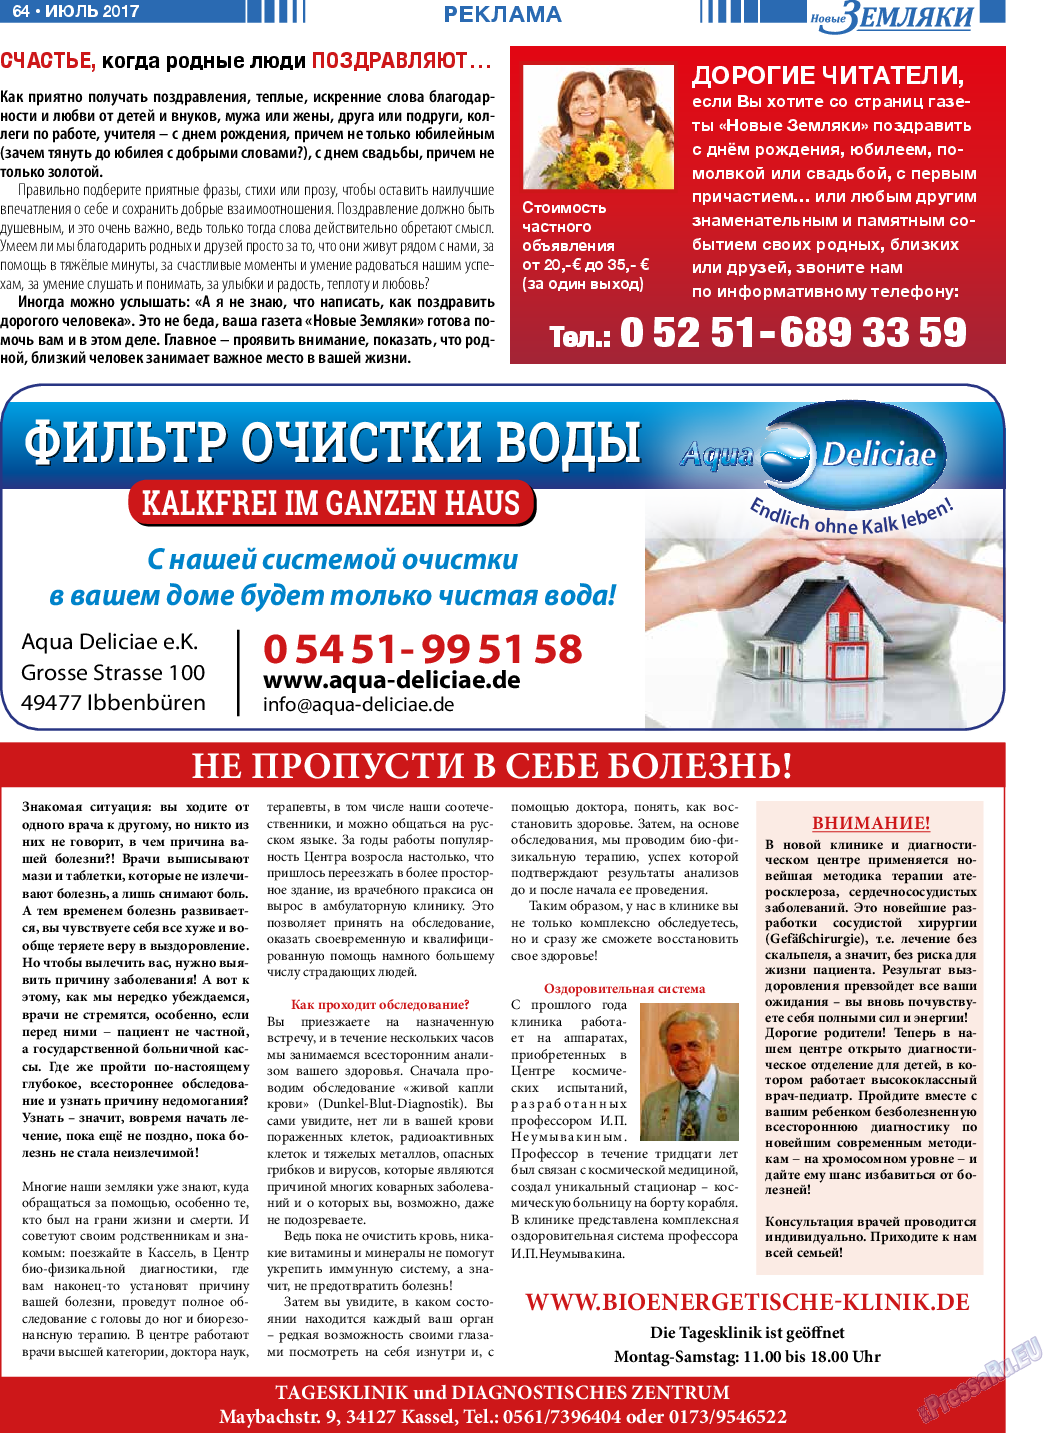 Новые Земляки, газета. 2017 №7 стр.64